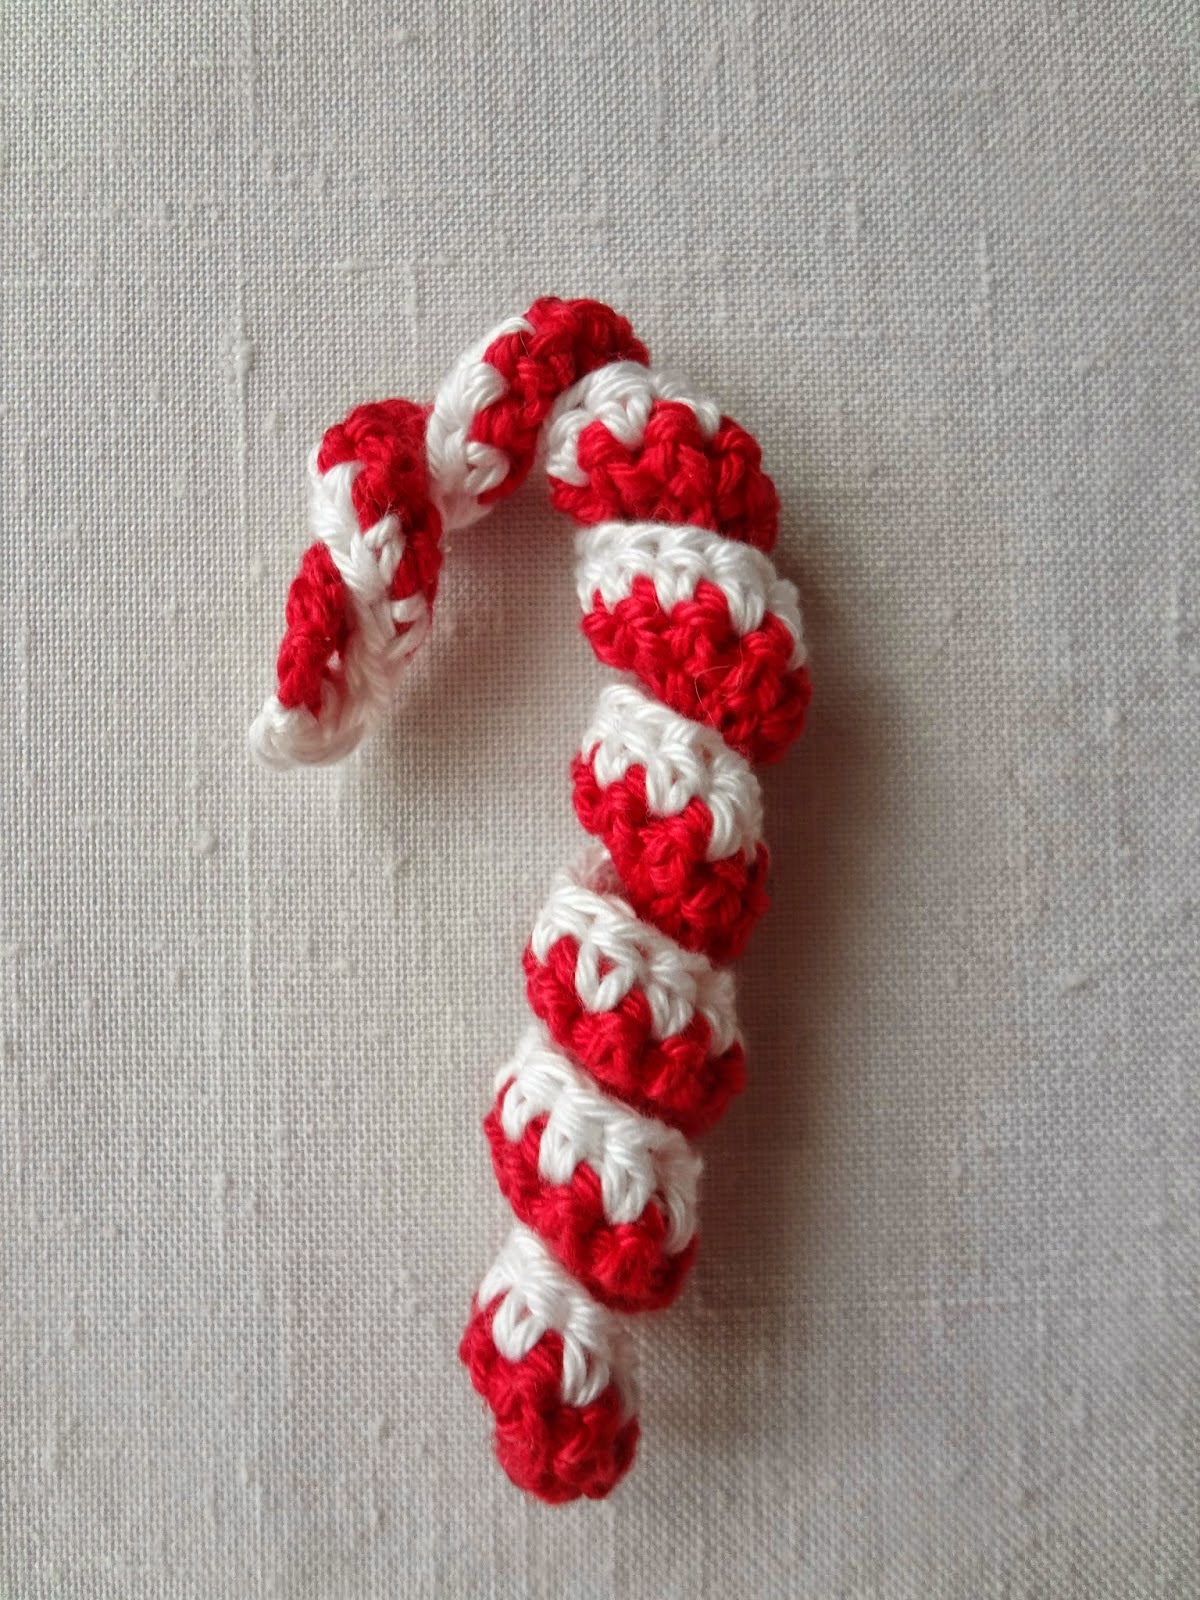 http://thelittletreasures.blogspot.com/2014/12/crochet-peppermint-sticks.html